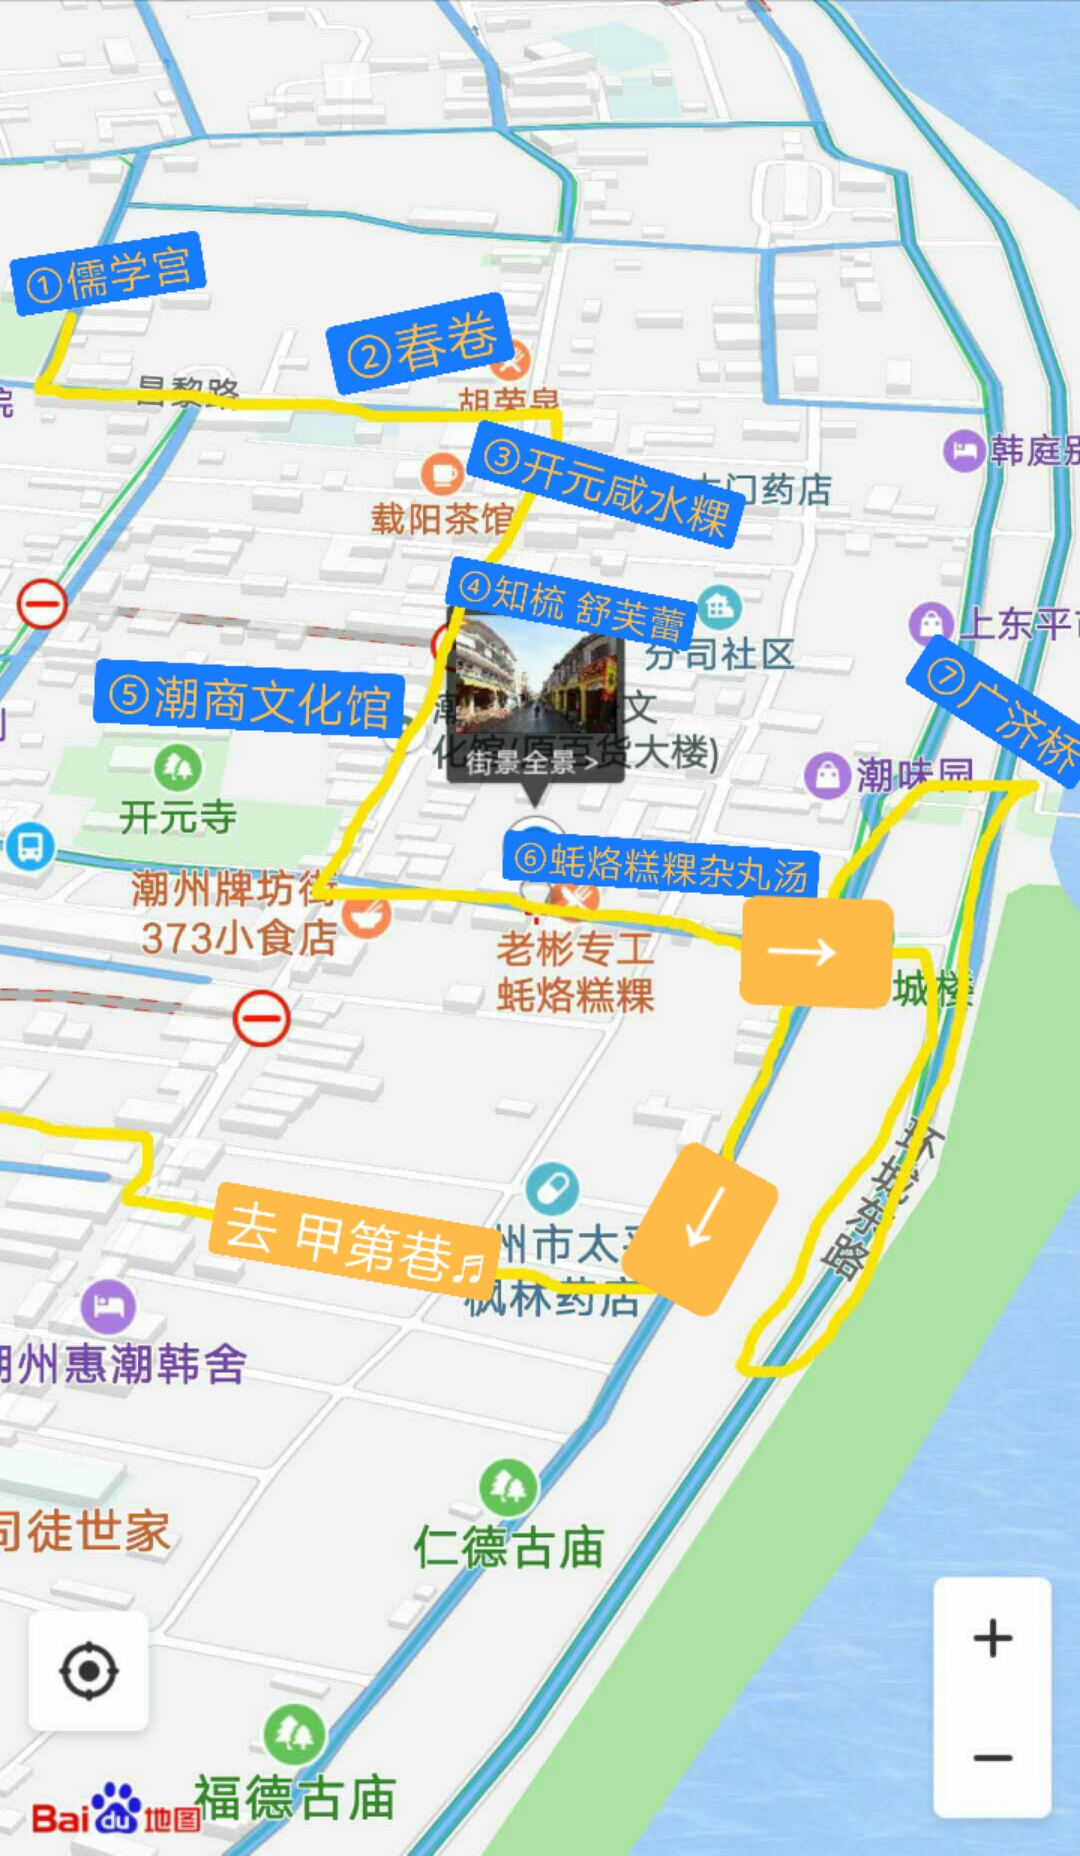 【食肆&景点】潮州城 一日九餐及观景路线分享 地图标注